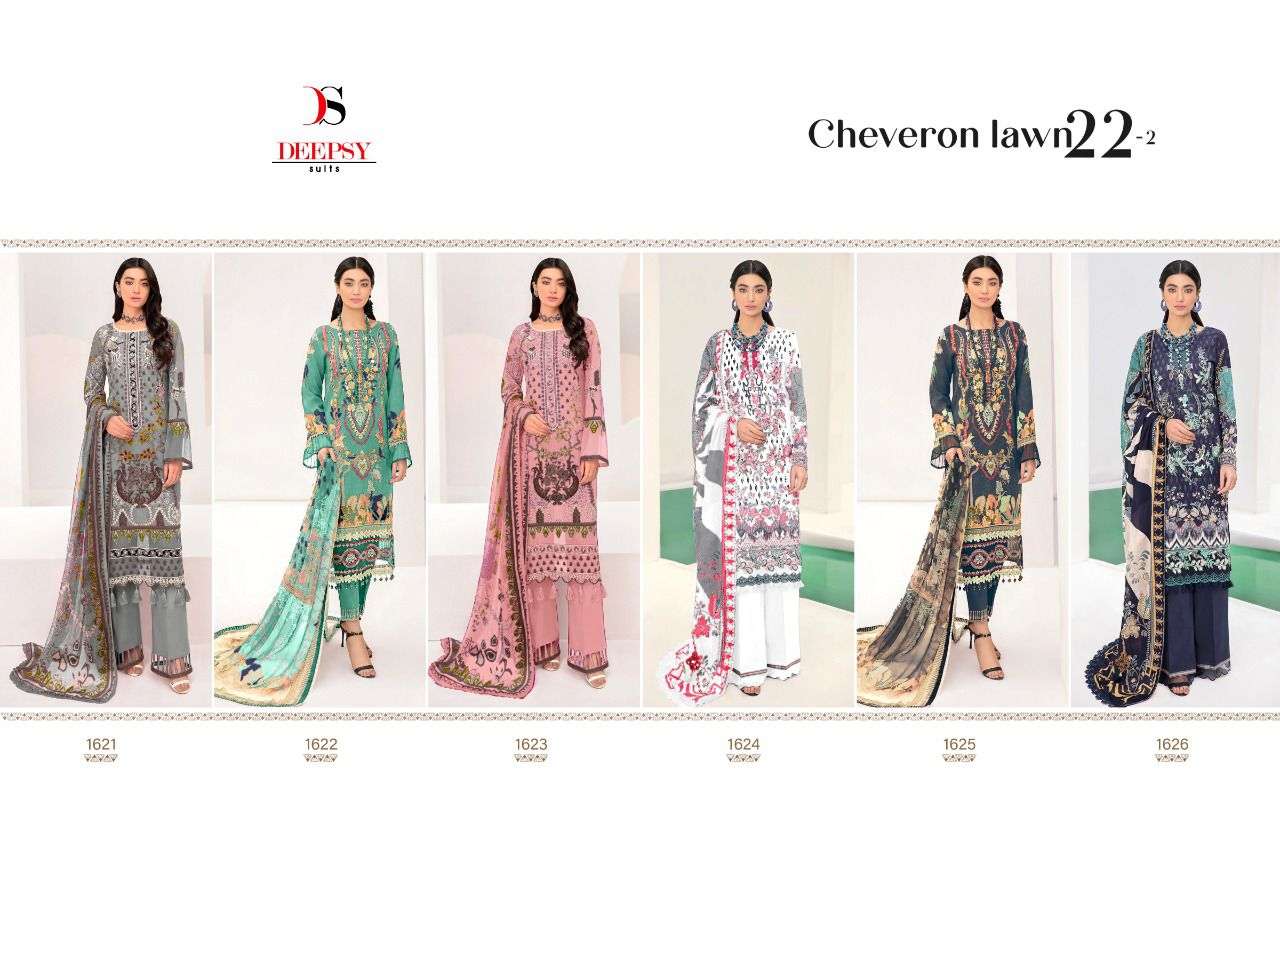 chevron lawn 22-2- by deespy suits wholesale pakistani salwar kameez surat